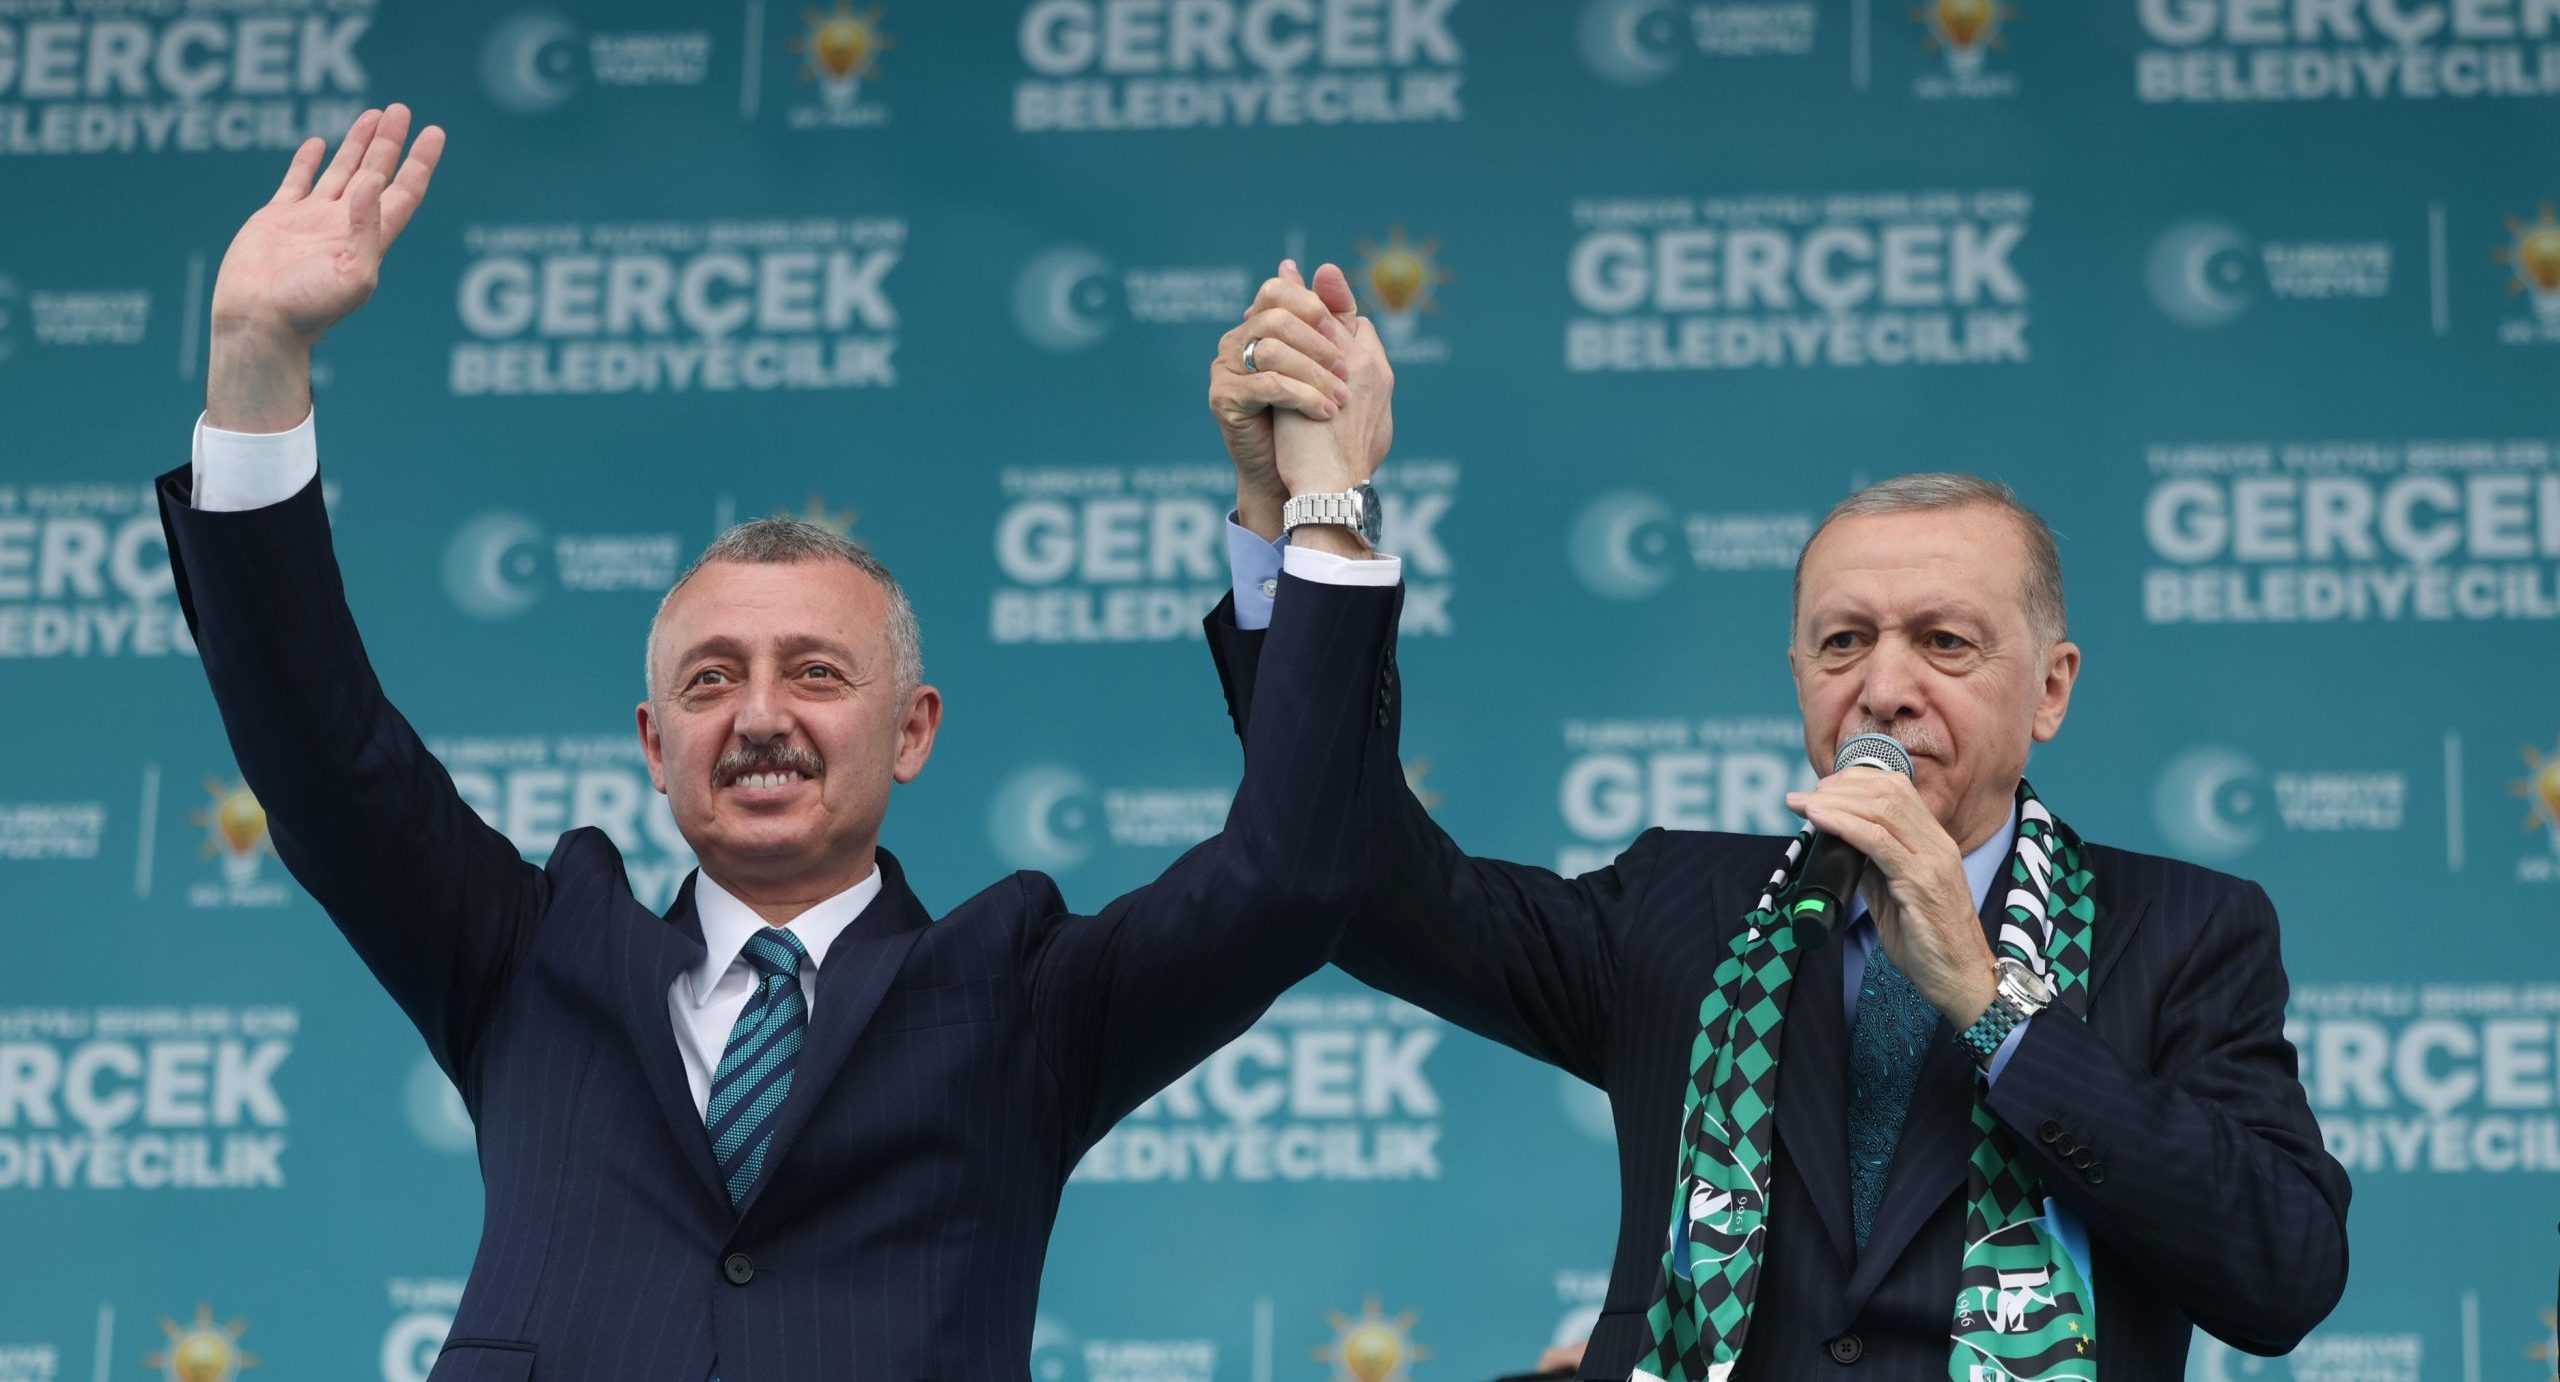 Cumhurbaşkanı Erdoğan’dan Kocaeli Mitingi ’ne damga vuran sözler: “İşte benim dostum, yol arkadaşım Kocaeli bu”